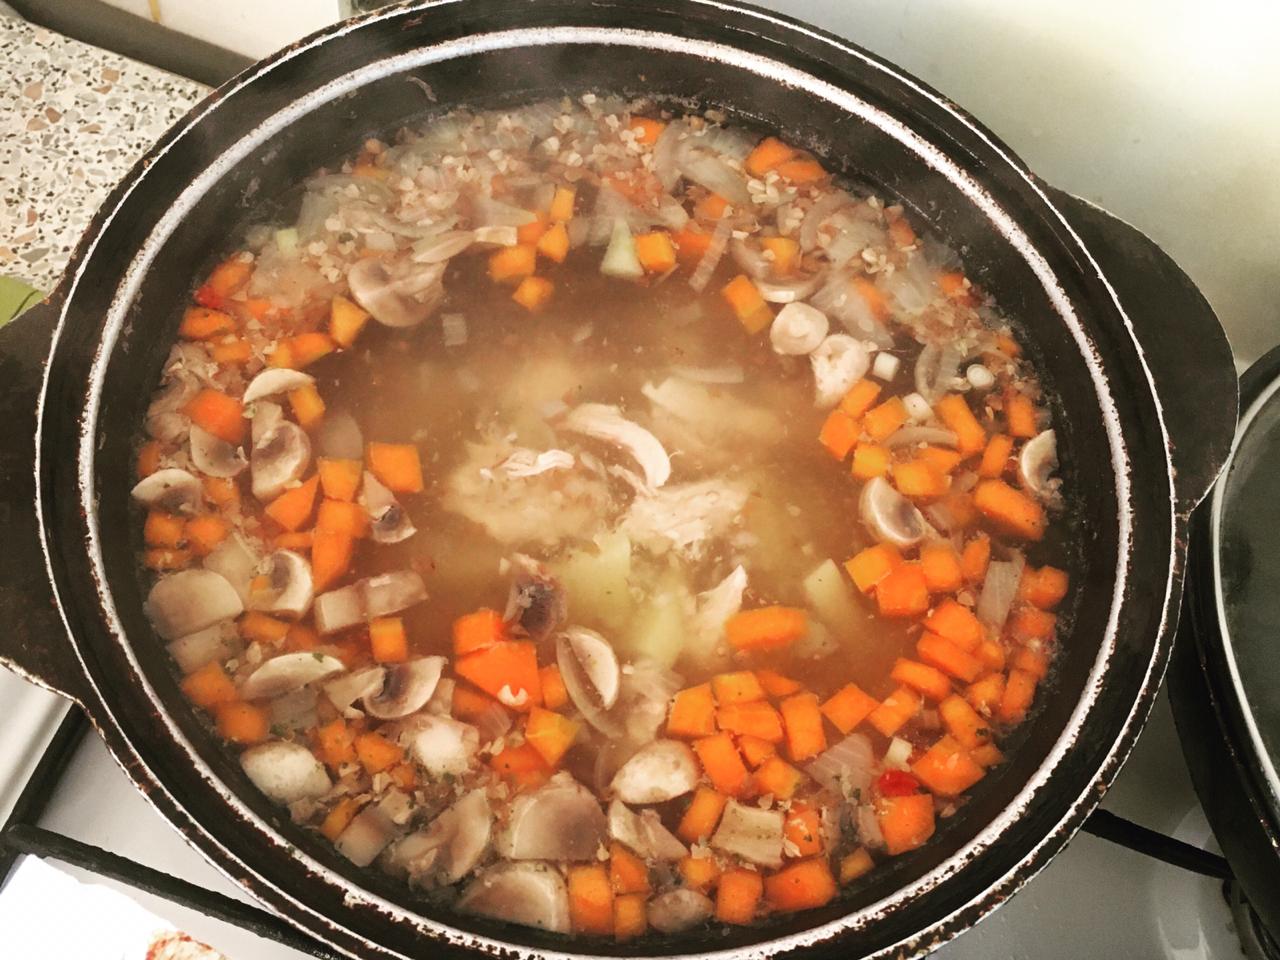 Лук, морковь и картофель тоже отправляем в бульон. За 15 минут до готовности добавляем в наш суп гречку. Солим и перчим. Когда все ингредиенты сварились, огонь можно выключать. В этот момент положить в суп лавровый лист. Дайте ему время отдать свой аромат